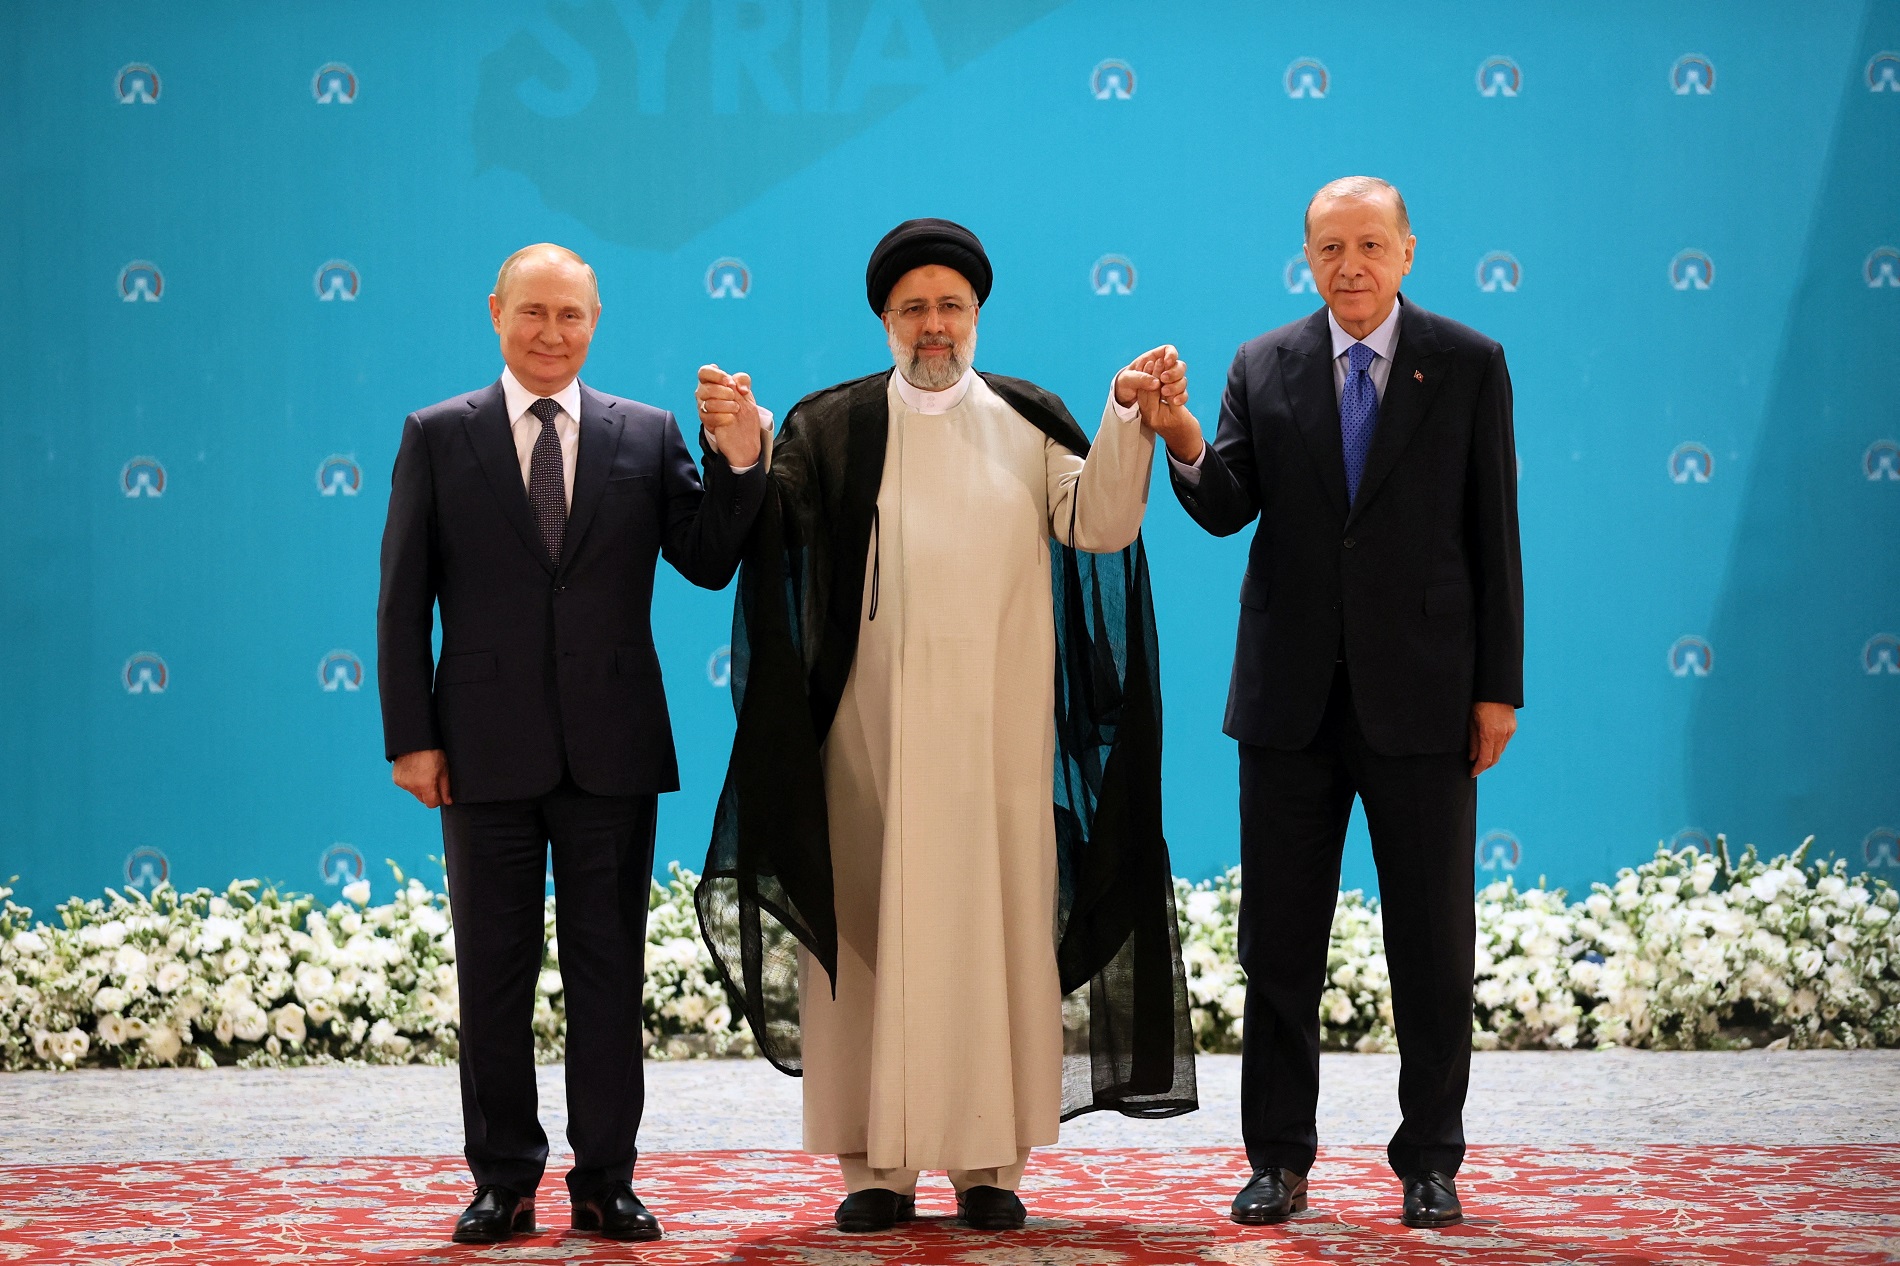 El presidente ruso, Vladimir Putin, el presidente iraní, Ebrahim Raisi, y el presidente turco, Tayyip Erdogan. -Sputnik/Sergei Savostyanov